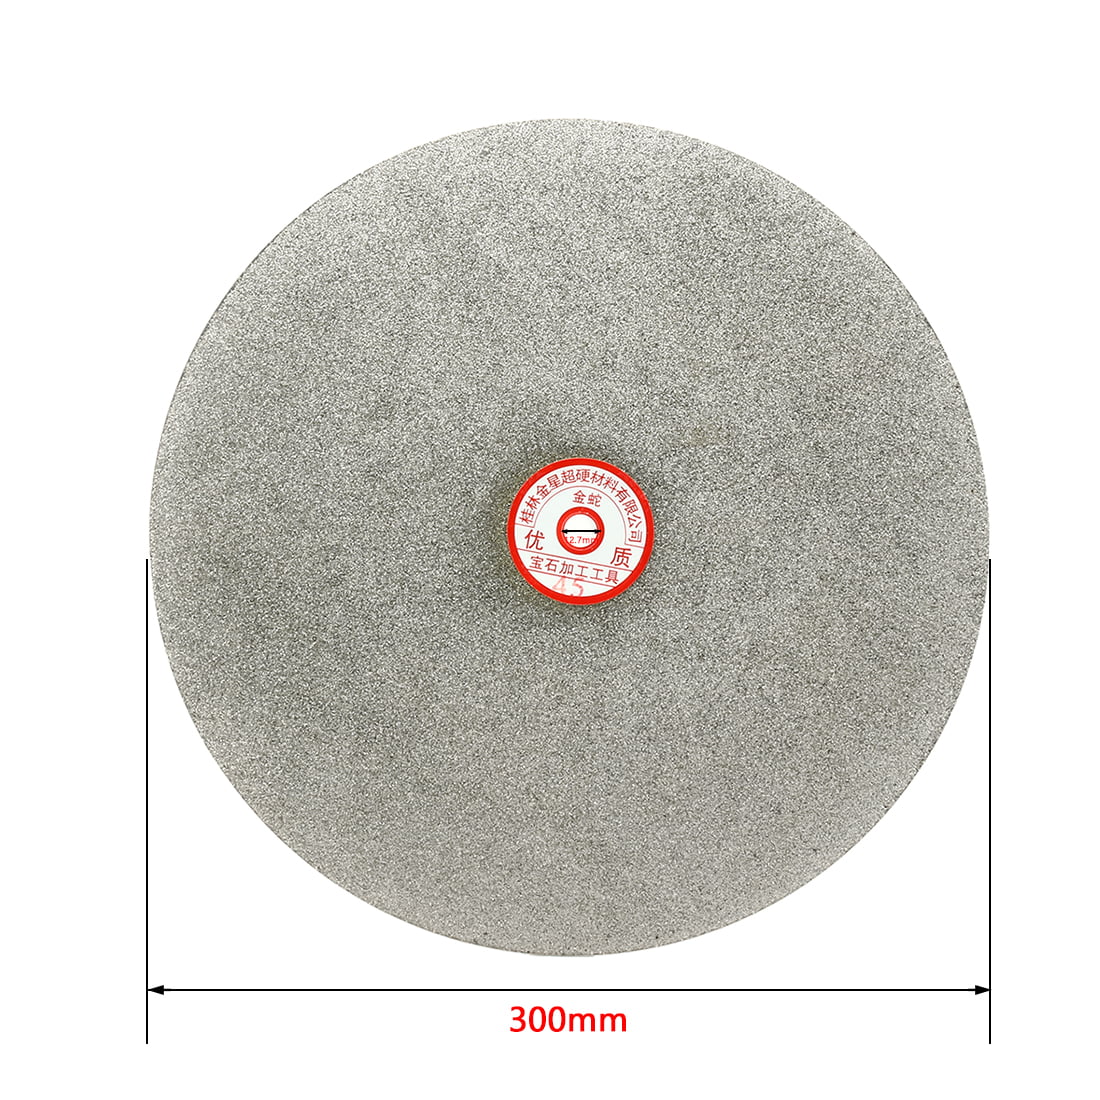 10 PACKS– 300mm Diameter Aluminium Oxide Sanding/Grinding Discs–Hook & Loop Back 